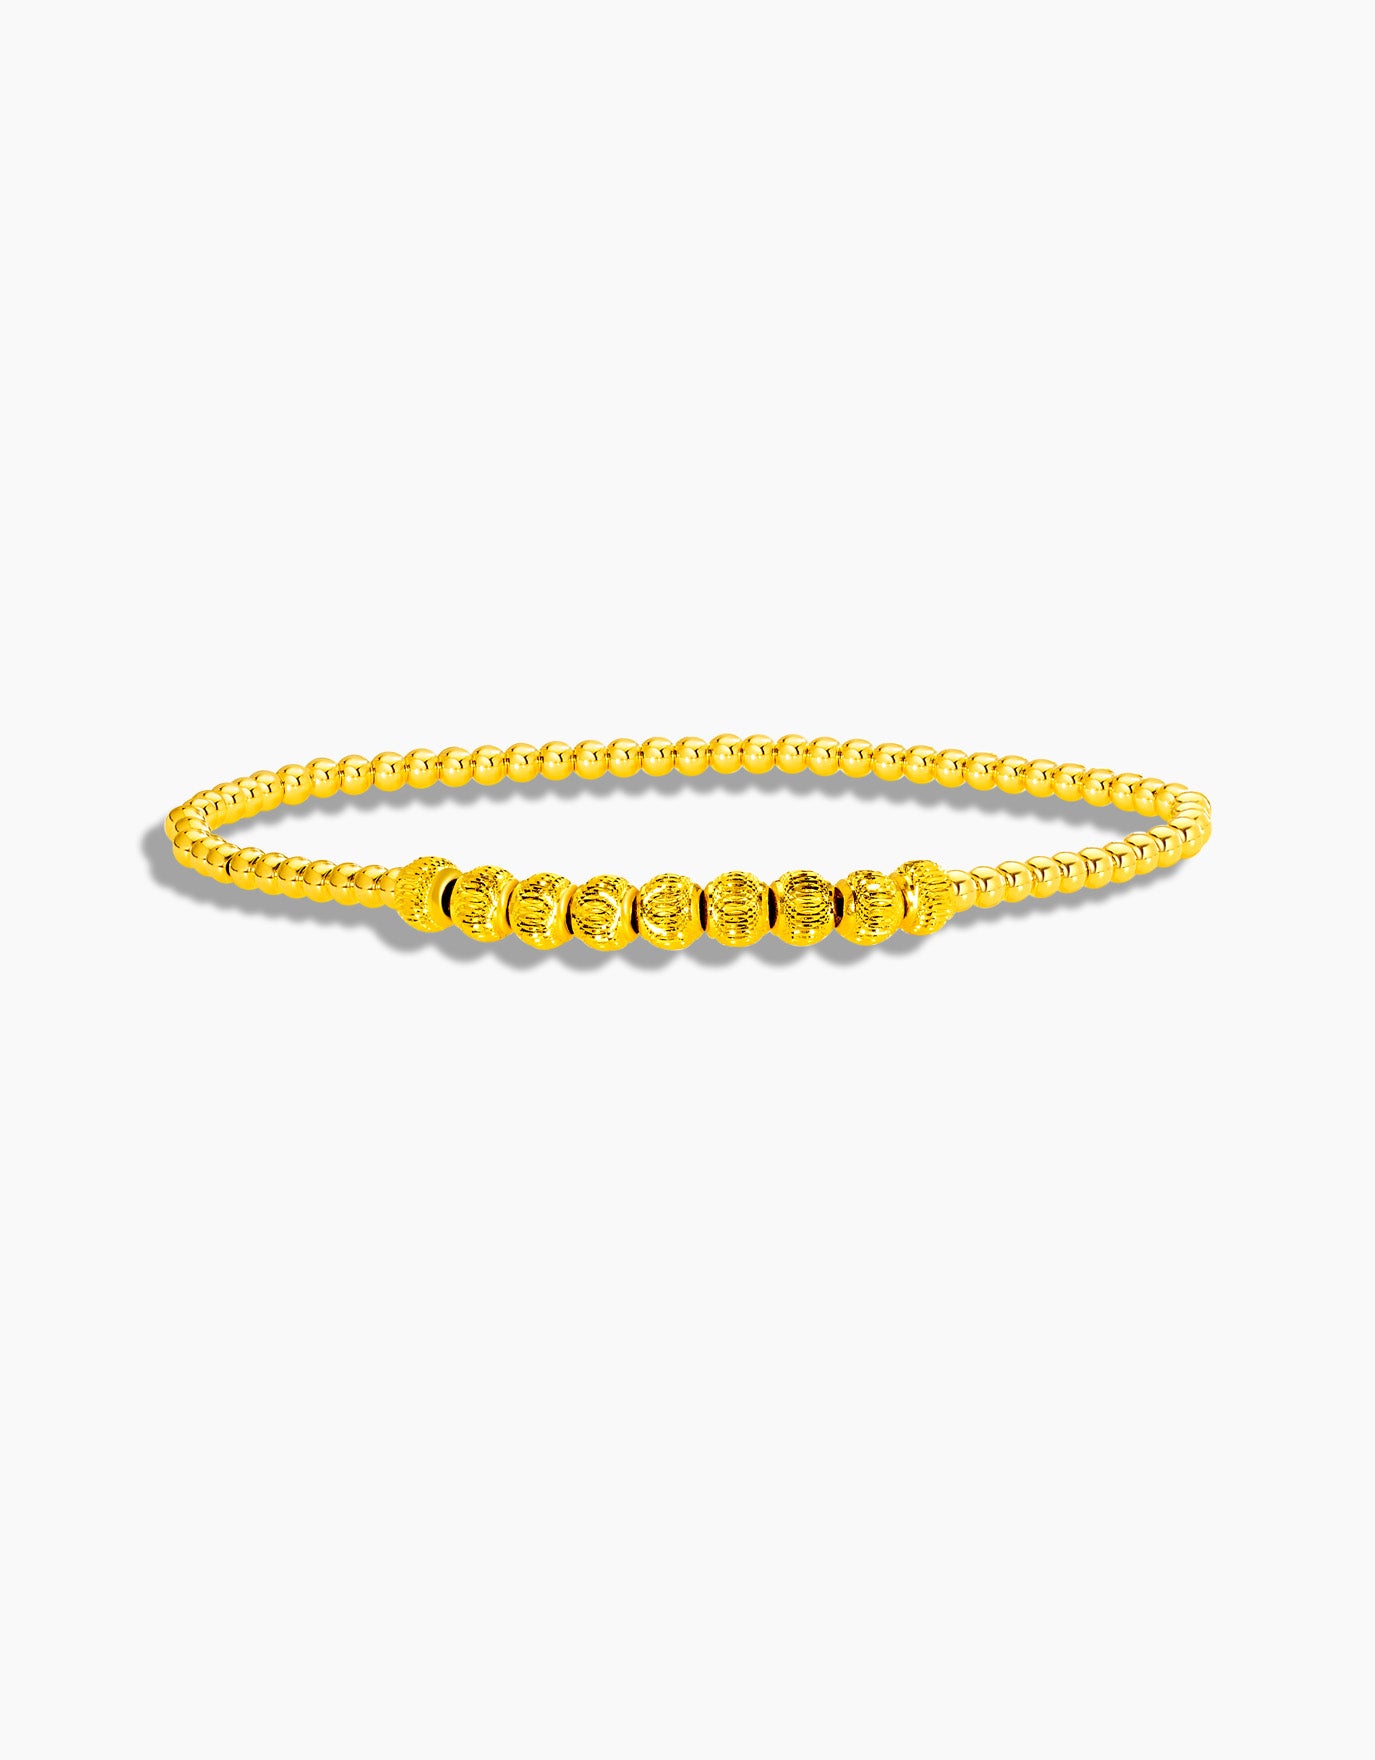 LVC 9IN Tricia Beaded 999 Gold Bracelet